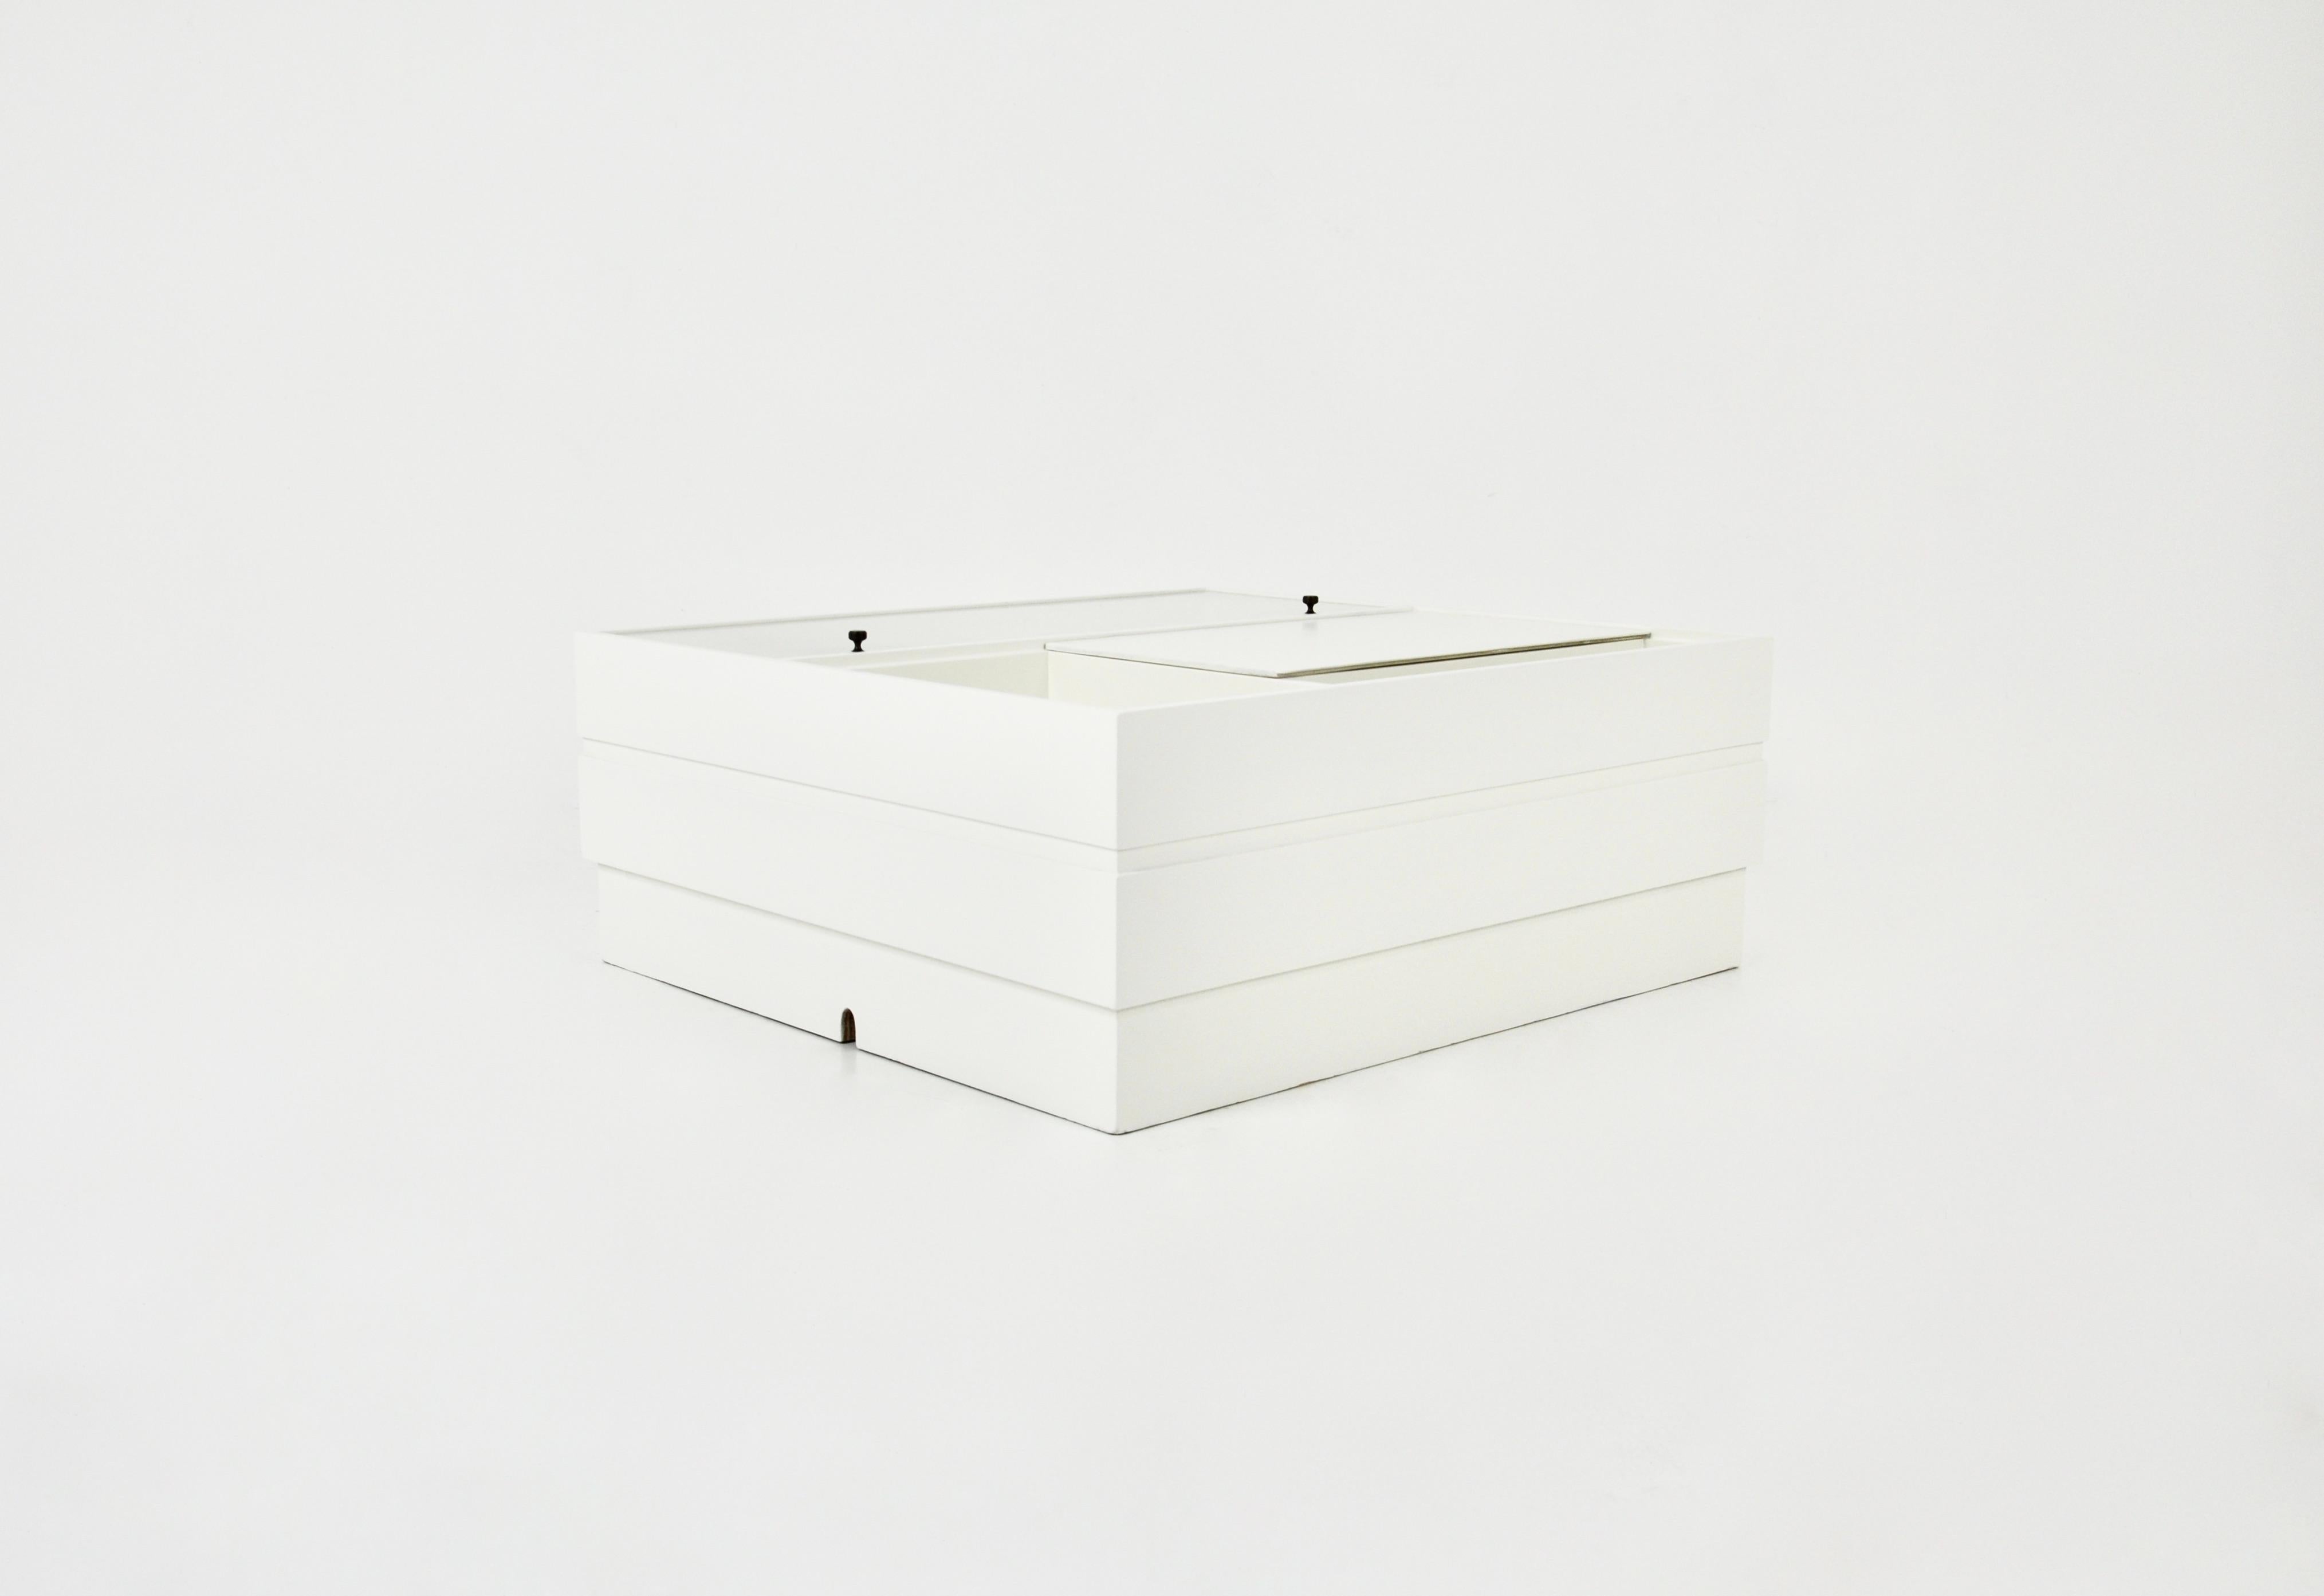 Table basse en bois blanc avec un compartiment pour un tourne-disque, un compartiment pour ranger des disques vinyles et deux espaces de rangement, dont l'un est en verre. Des trous sont faits pour le tourne-disque et pour les connexions. Usure due